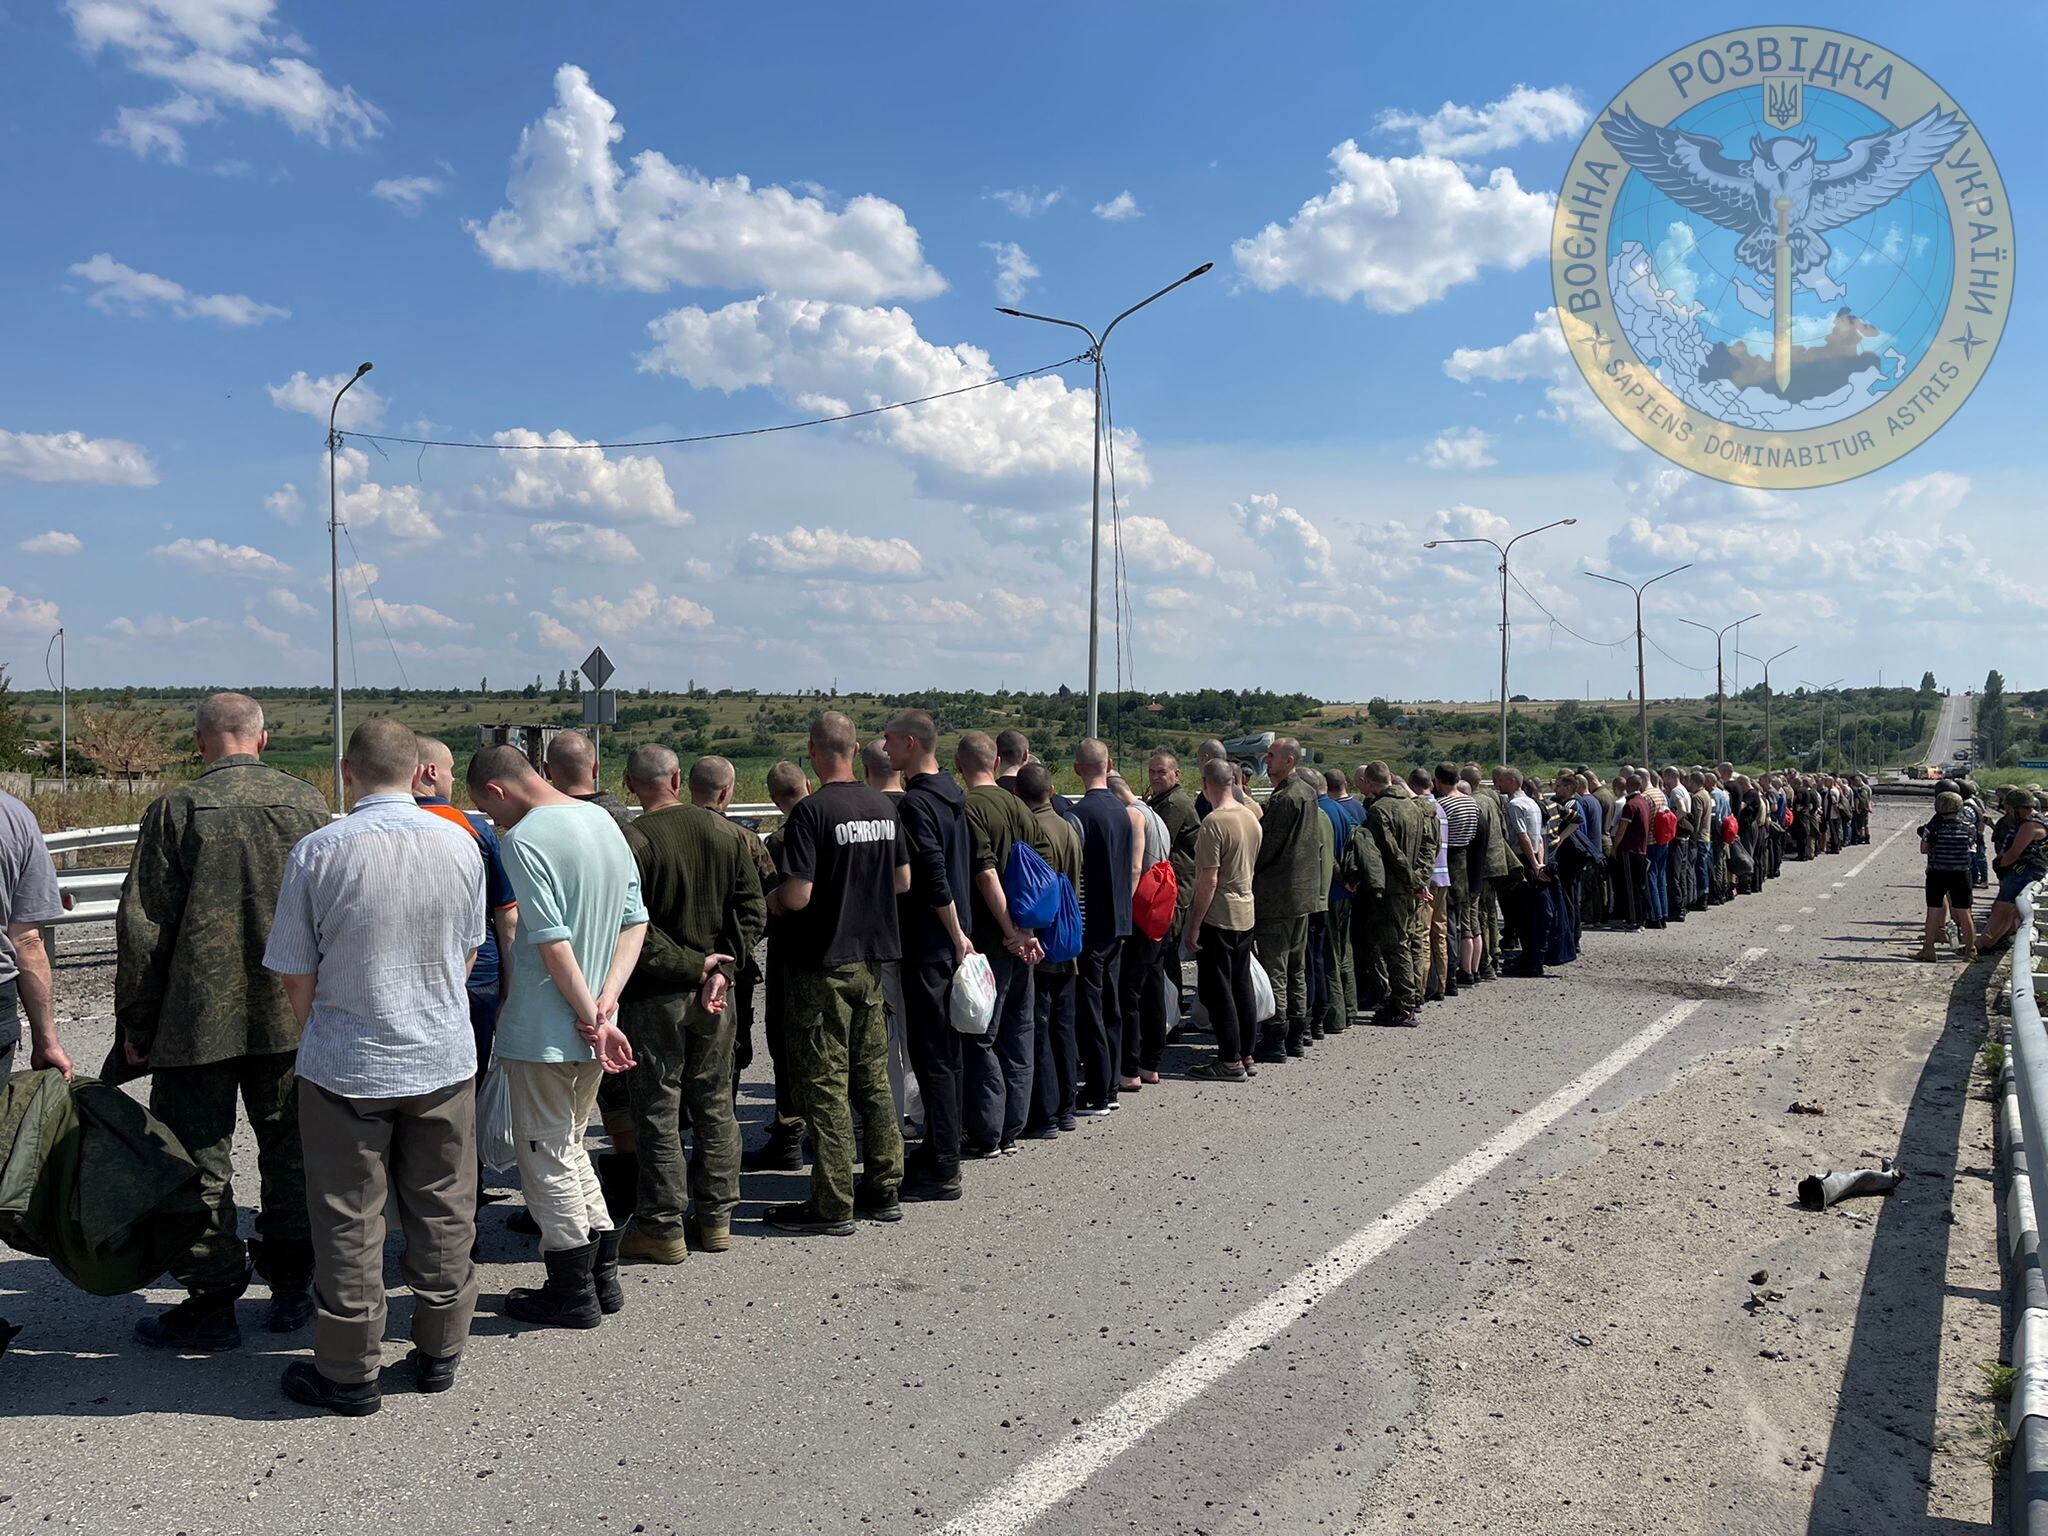 I prigionieri si allineano lungo una strada durante uno scambio di prigionieri, mentre l’attacco della Russia all’Ucraina continua, nel luogo indicato come Zaporizhzhia. (Courtesy of Ukraine's Military Intelligence/Handout via REUTERS)